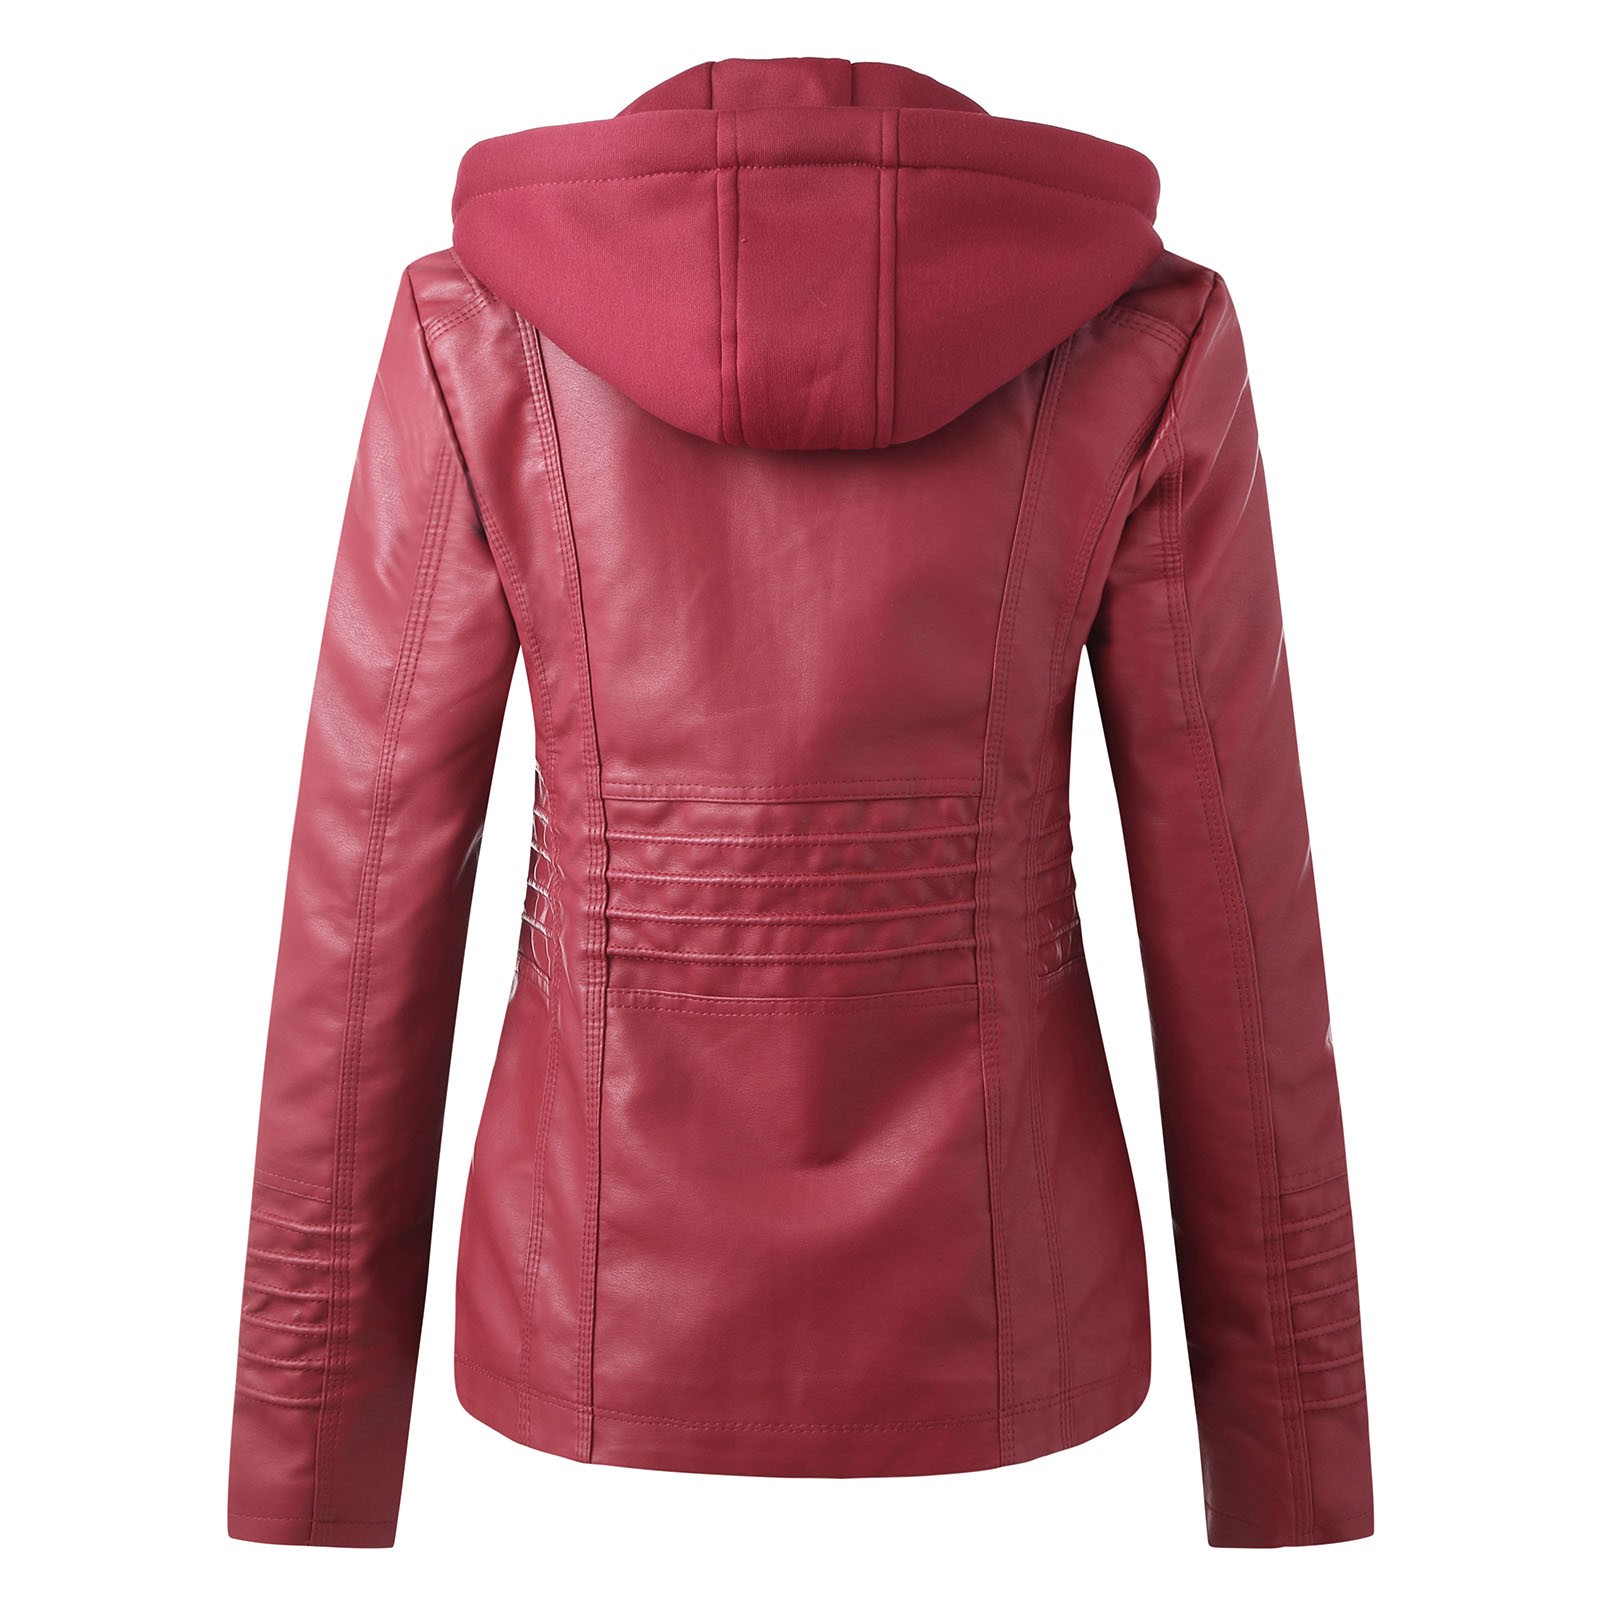 Bescita Women's Slim Leather Stand Collar Zip Motorcycle Suit Belt Coat Jacket Tops - image 2 of 5